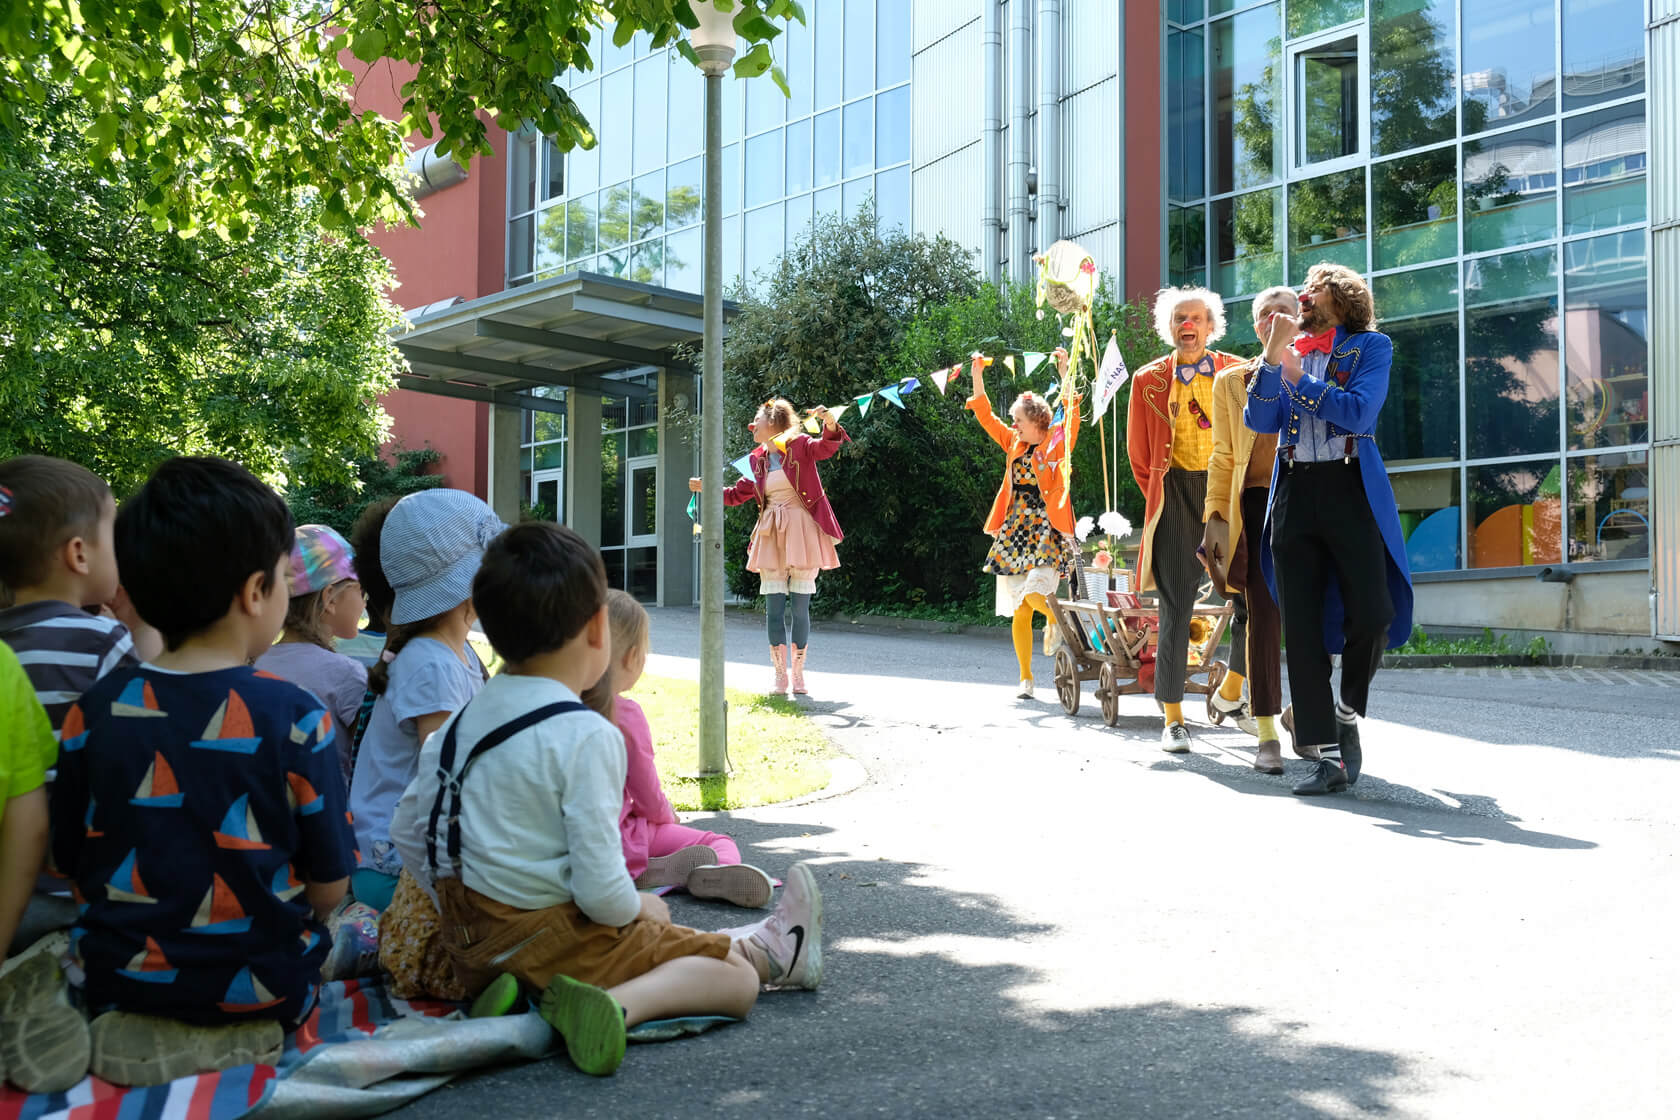 Vor einem Gebäude steht eine Gruppe als Clown verkleideter Menschen. vor ihnen sitzt eine Gruppe Kinder auf einer Wiese.